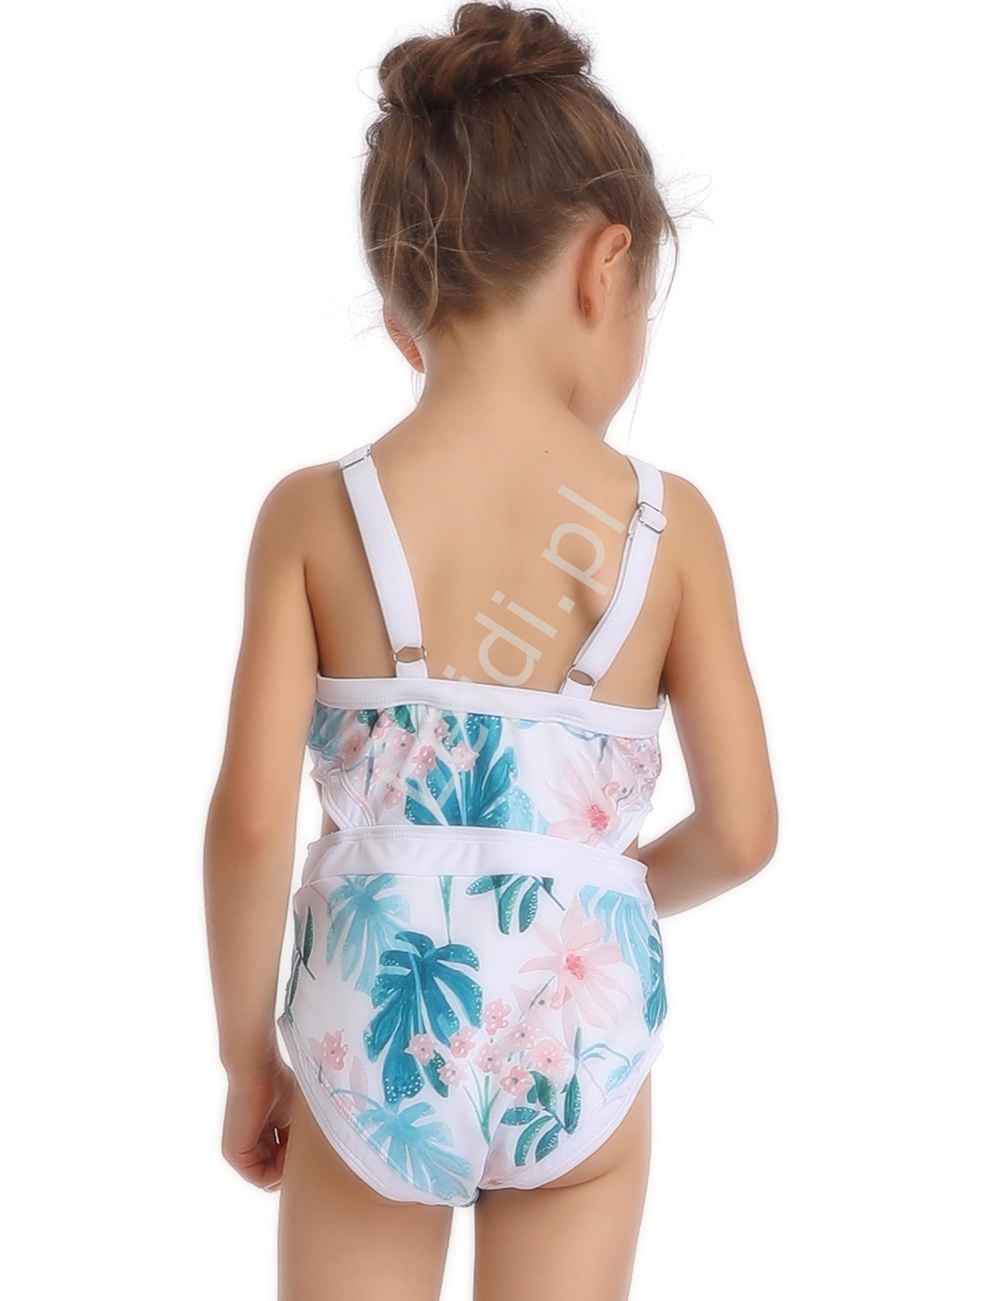 Jednoczęściowy strój kąpielowy dla mamy i córki na plaże i basen